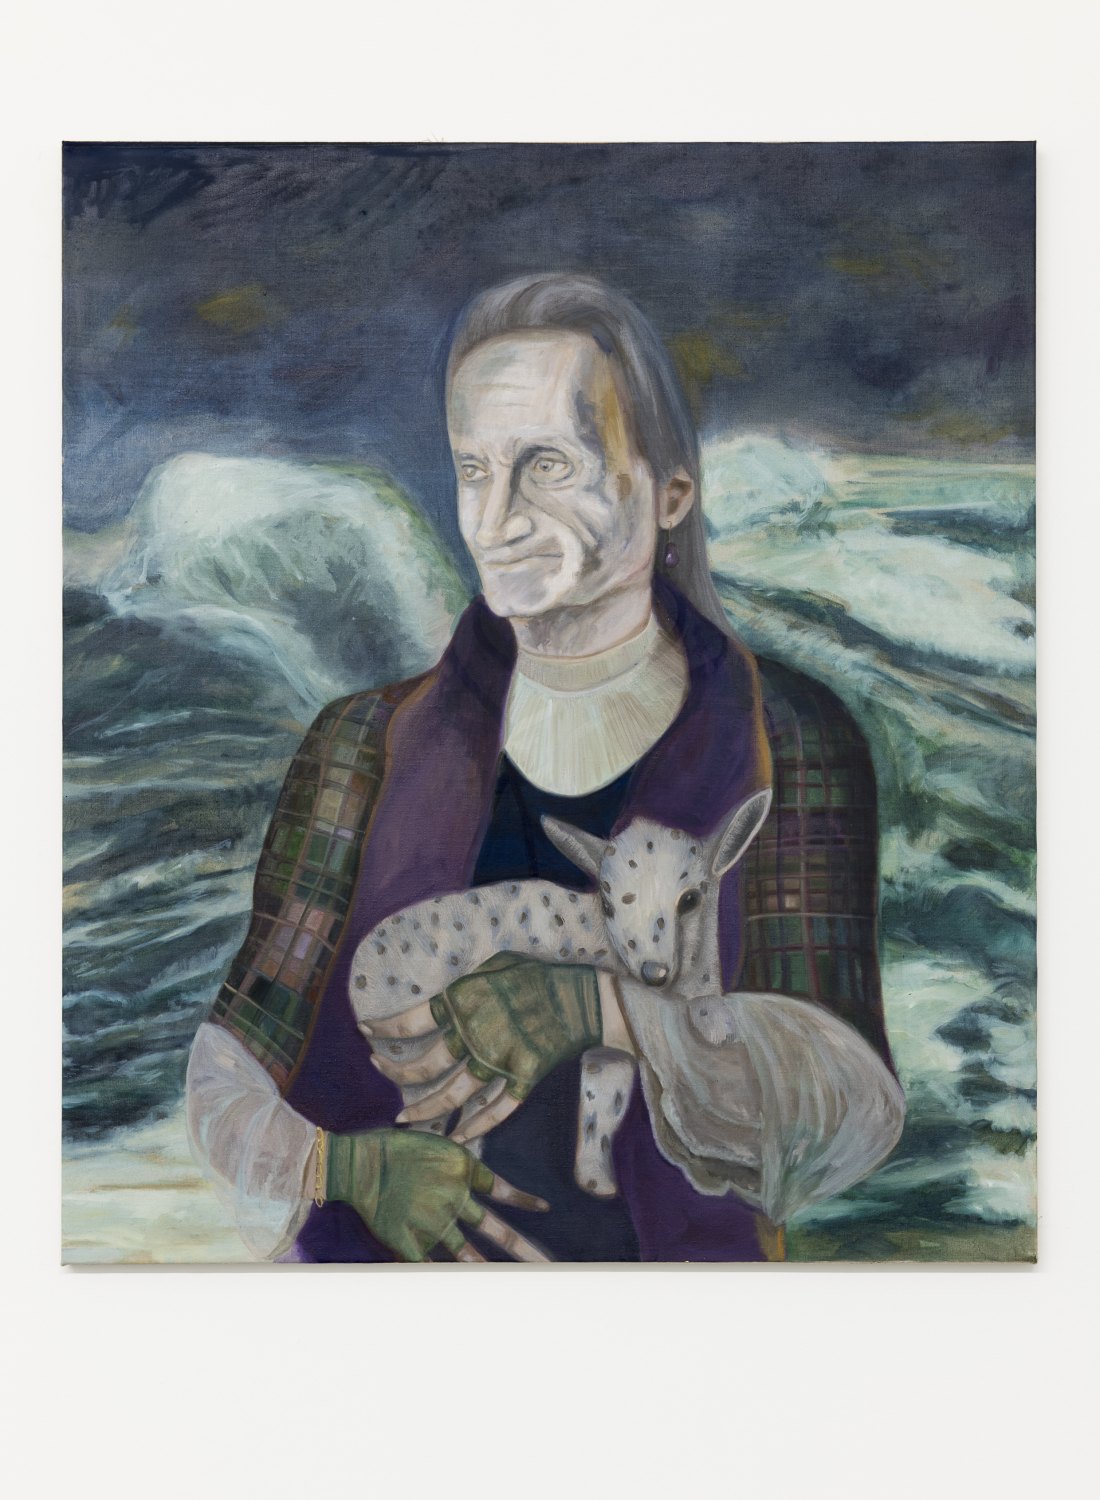 Jill Mulleady Self portrait in 2066 / Dementia, 2018 Oil on linen, 122 x 106 cm